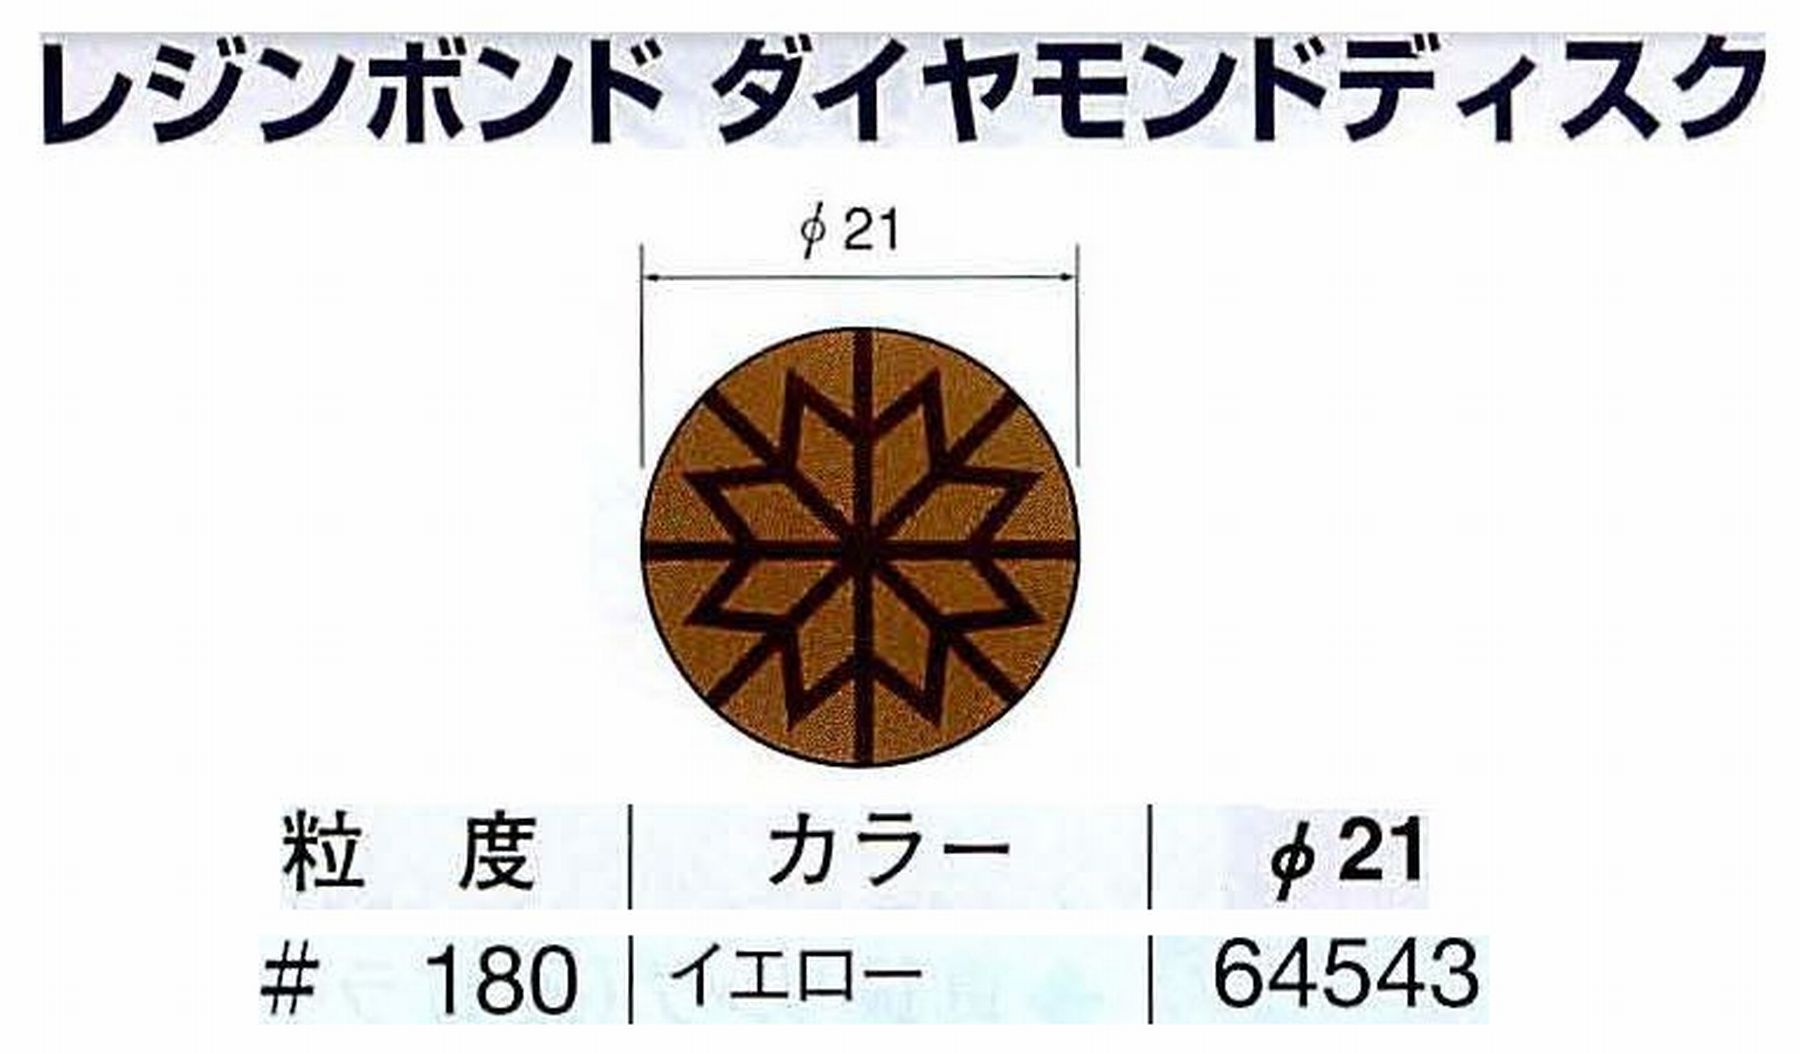 ナカニシ/NAKANISHI アングルグラインダ(電動・エアー) アングルアタッチメント専用工具 レジンボンド ダイヤモンドディスク(パターンタイプ) 64543